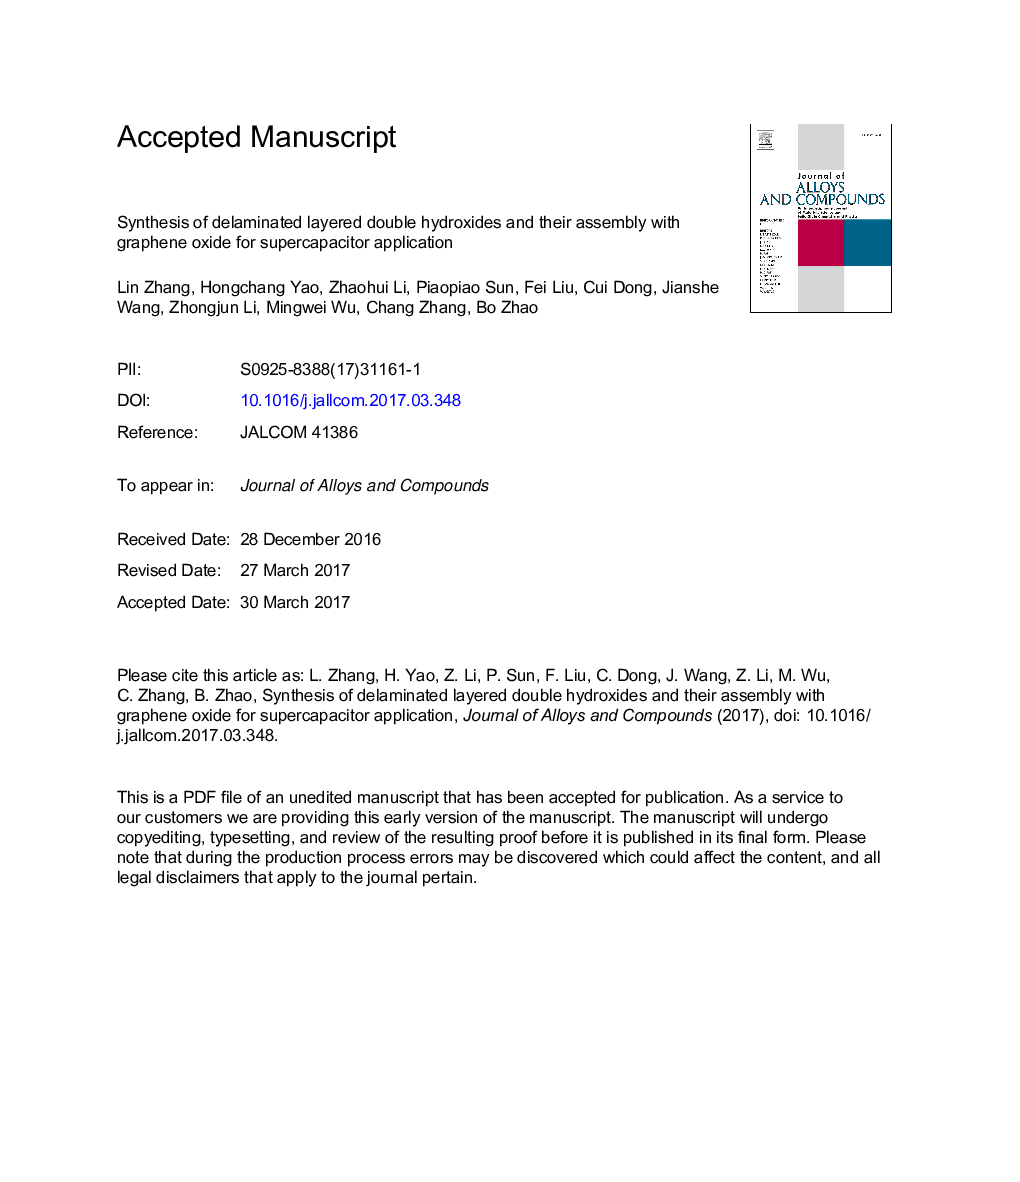 سنتز هیدروکسید دو لایه دوطرفه و ترکیب آنها با اکسید گرافین برای کاربرد ابرخازن 